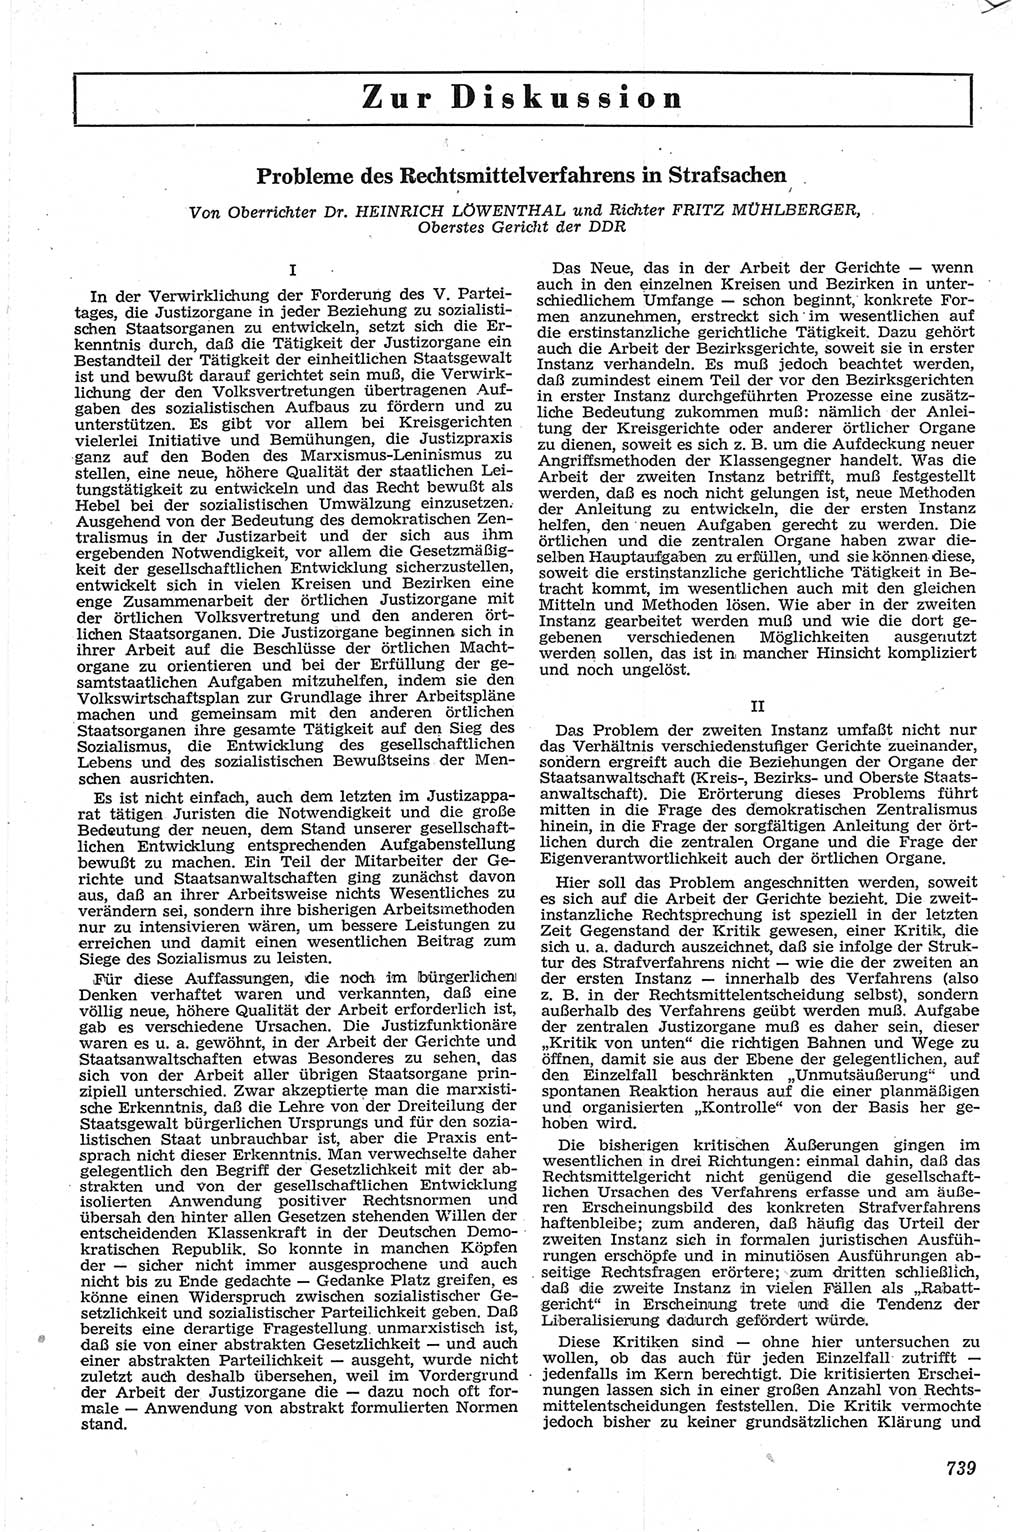 Neue Justiz (NJ), Zeitschrift für Recht und Rechtswissenschaft [Deutsche Demokratische Republik (DDR)], 13. Jahrgang 1959, Seite 739 (NJ DDR 1959, S. 739)